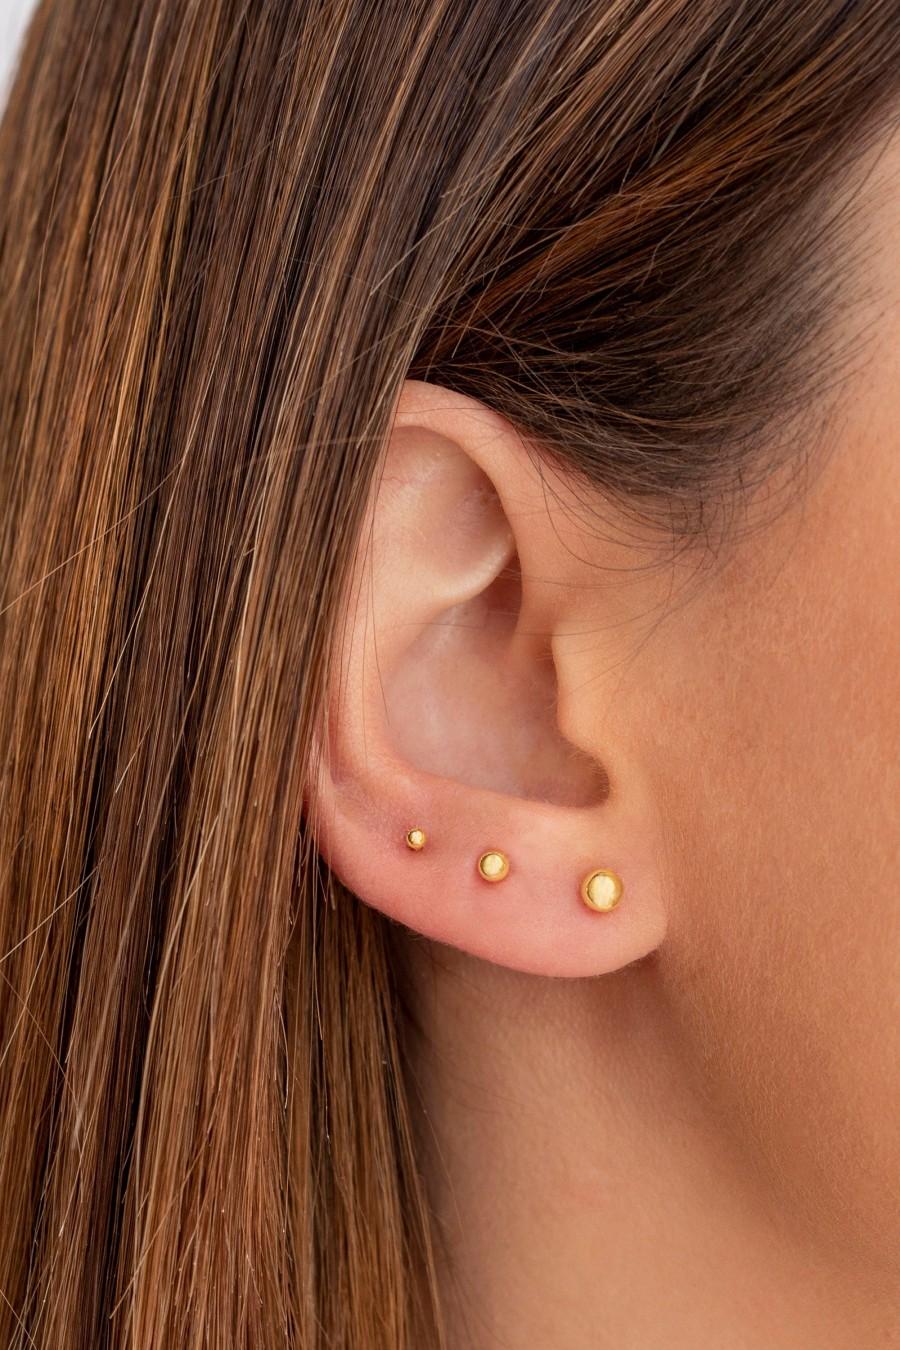 زفاف - Ball earrings, Ball stud earrings, Silver stud earrings, Sphere earrings, Second hole ball earrings, Dot stud earrings, Tiny ball earrings